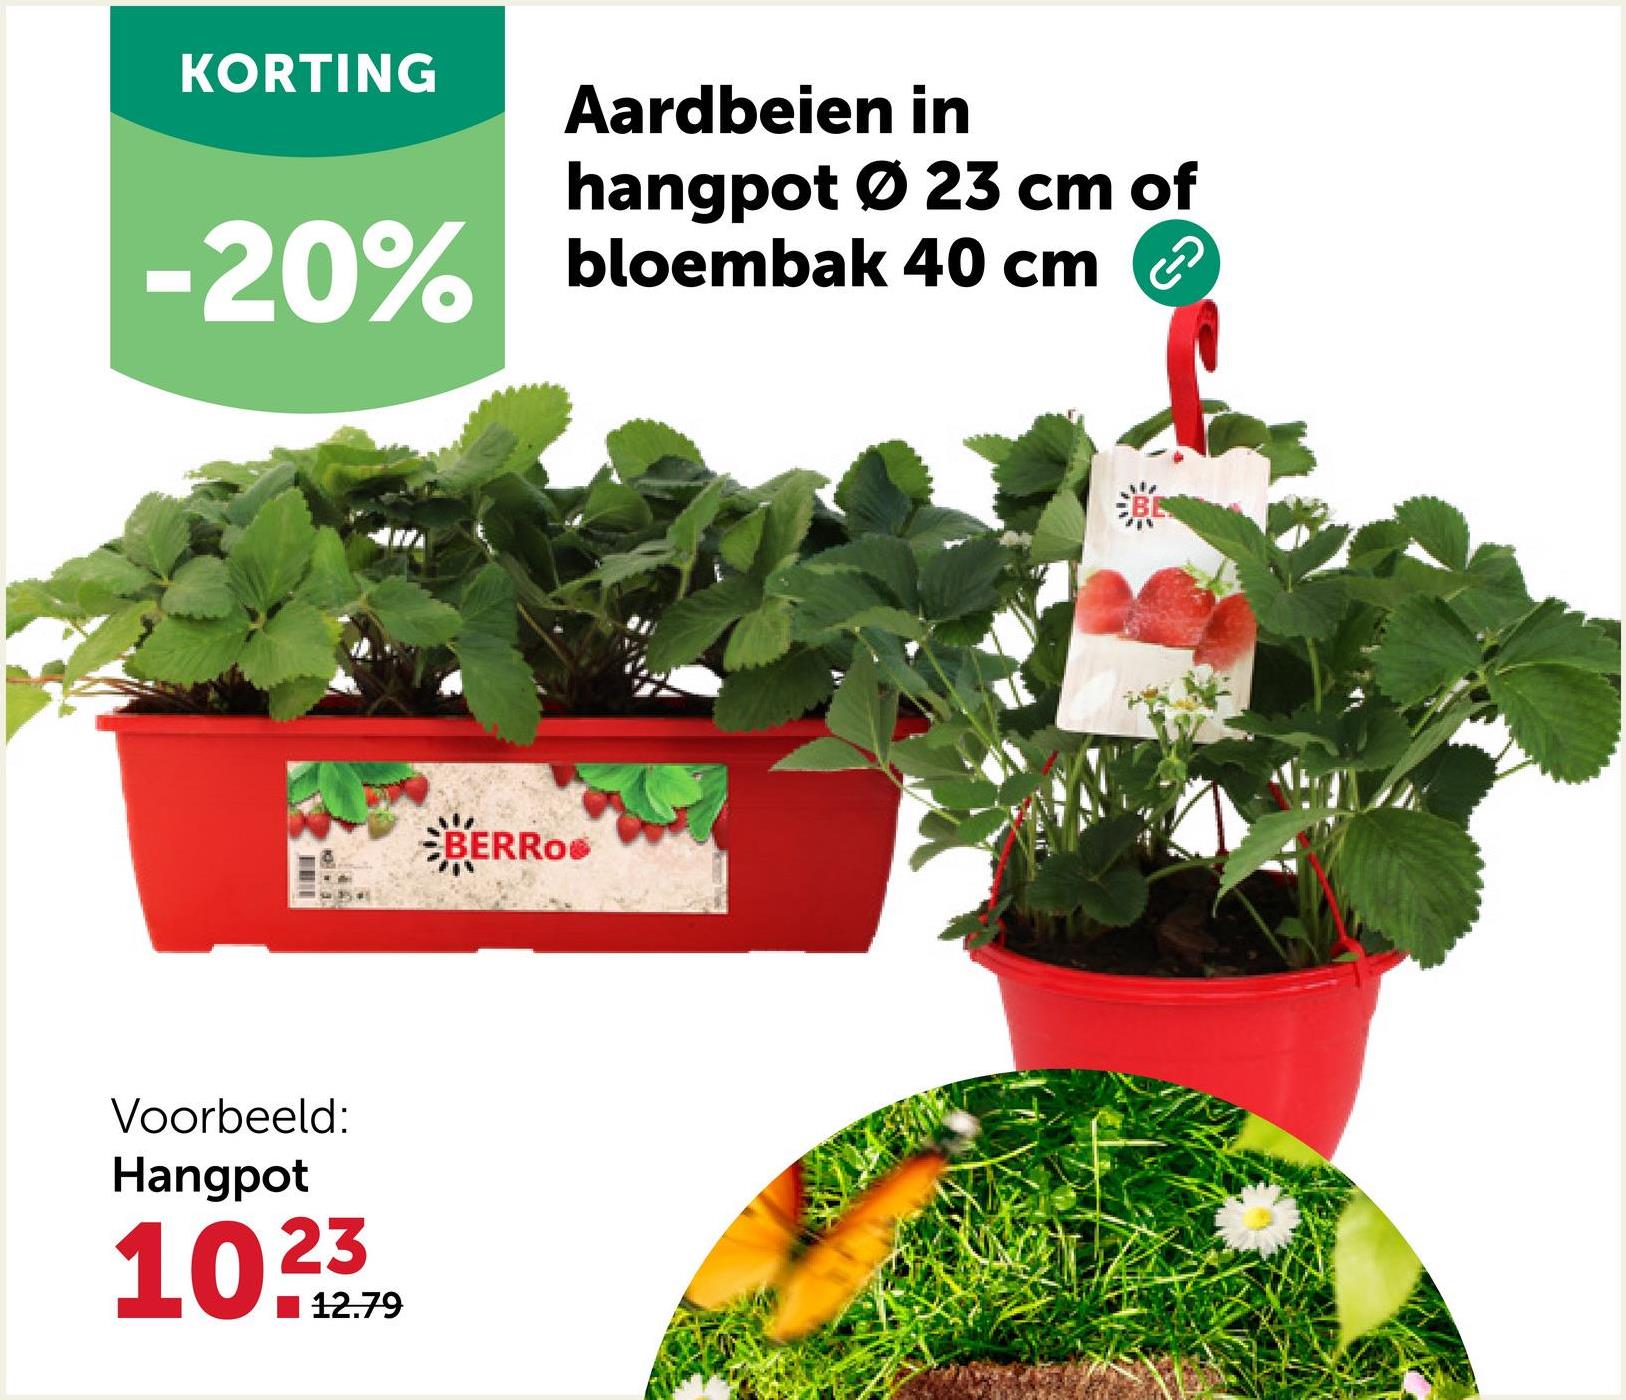 KORTING
Aardbeien in
hangpot Ø 23 cm of
-20% bloembak 40 cm
Voorbeeld:
Hangpot
102379
12.79
BERRO®
BE